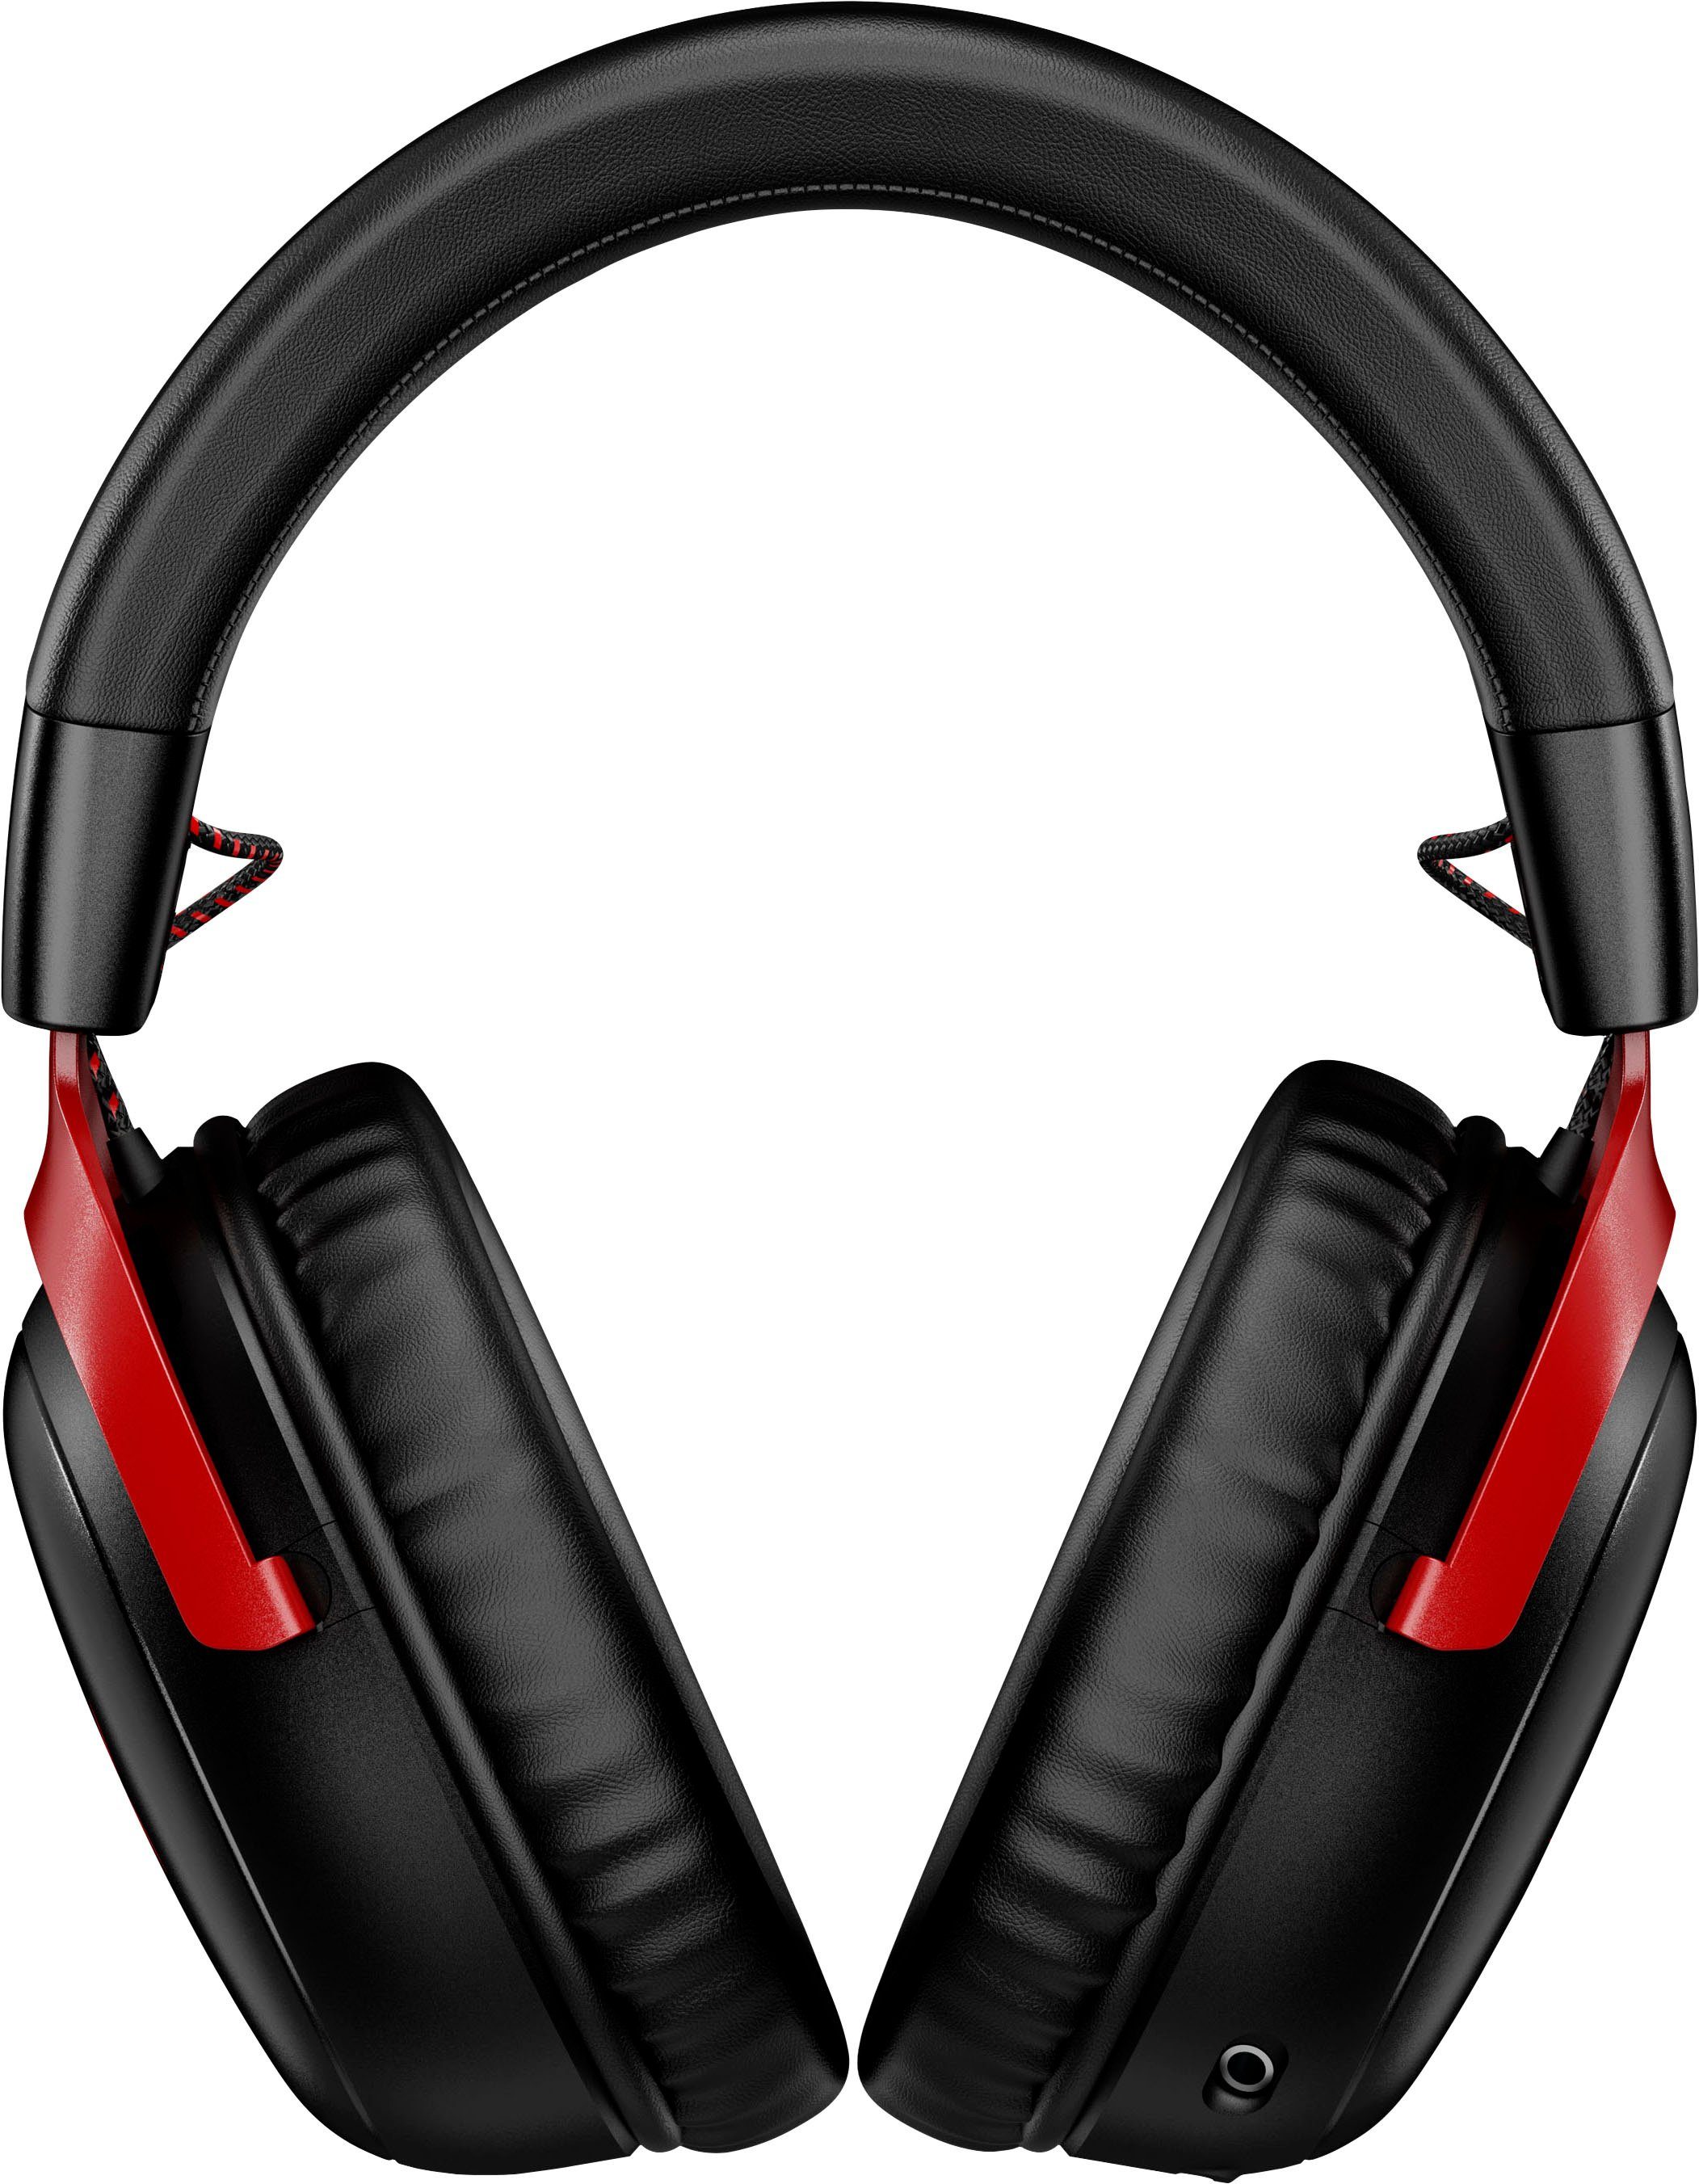 HyperX Cloud schwarz/rot III Gaming-Headset Wireless Wireless) (Geräuschisolierung